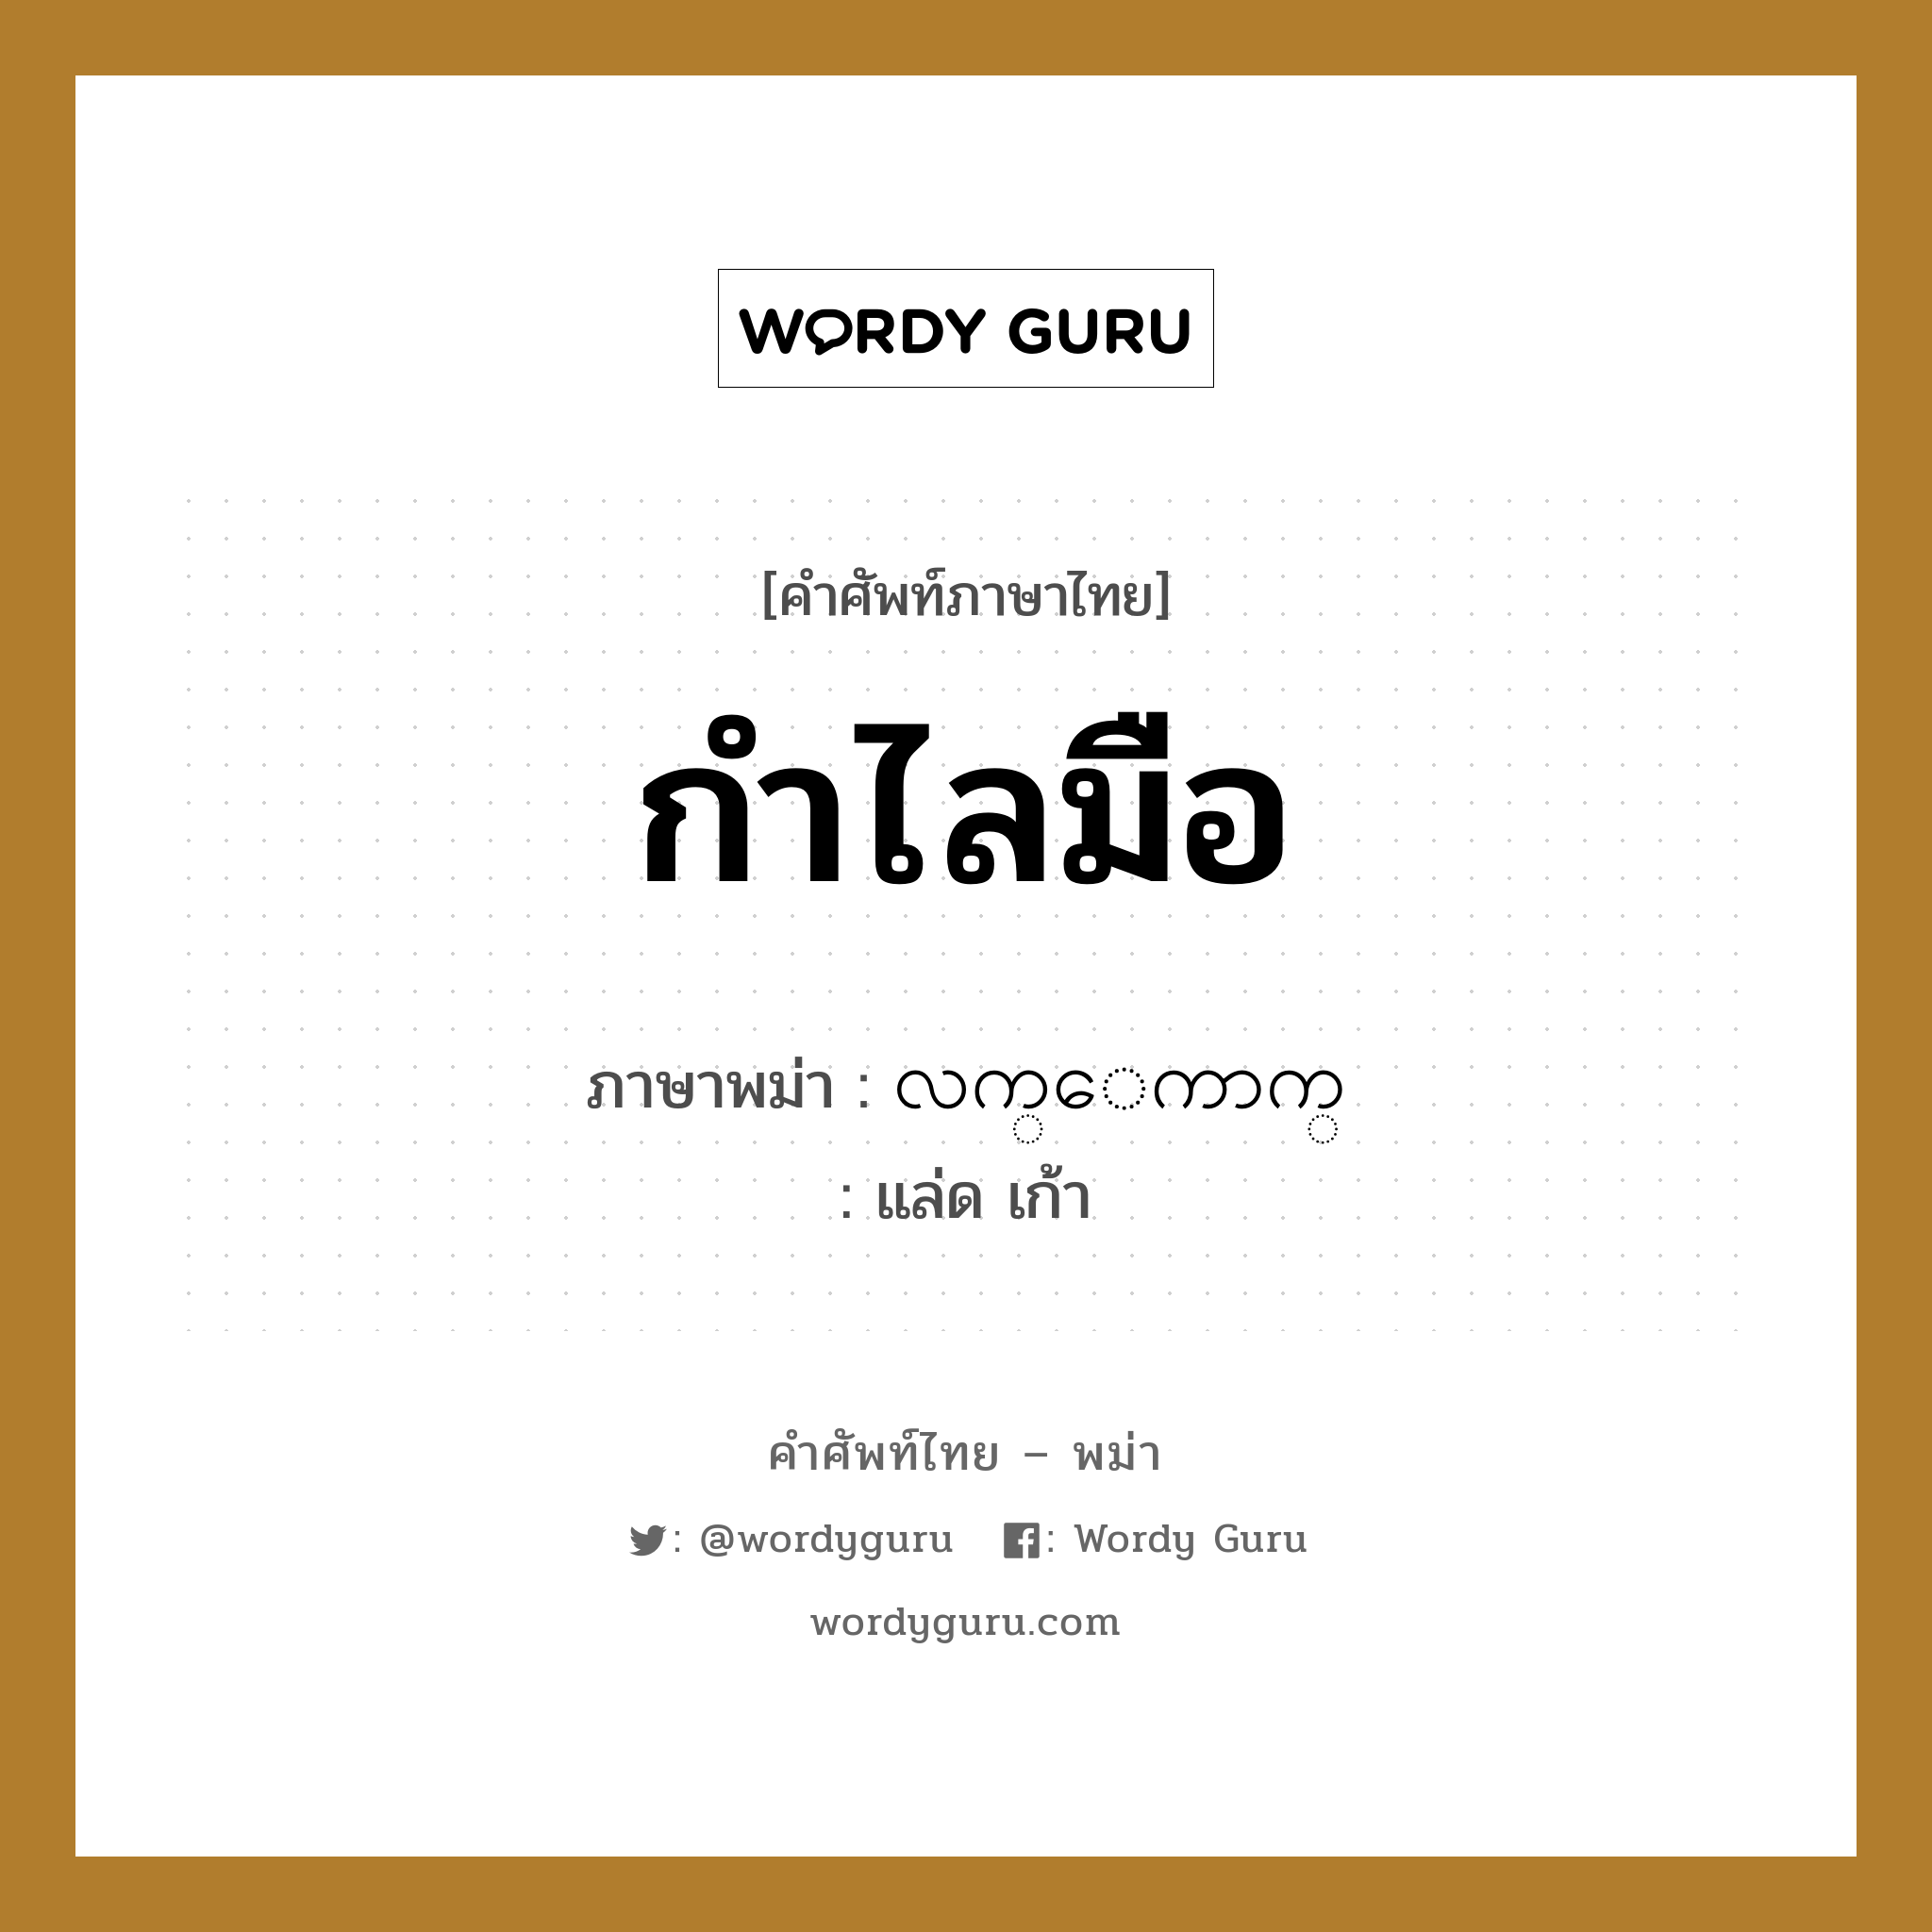 กำไลมือ ภาษาพม่าคืออะไร, คำศัพท์ภาษาไทย - พม่า กำไลมือ ภาษาพม่า လက္ေကာက္ หมวด หมวดของใช้ส่วนตัว แล่ด เก้า หมวด หมวดของใช้ส่วนตัว